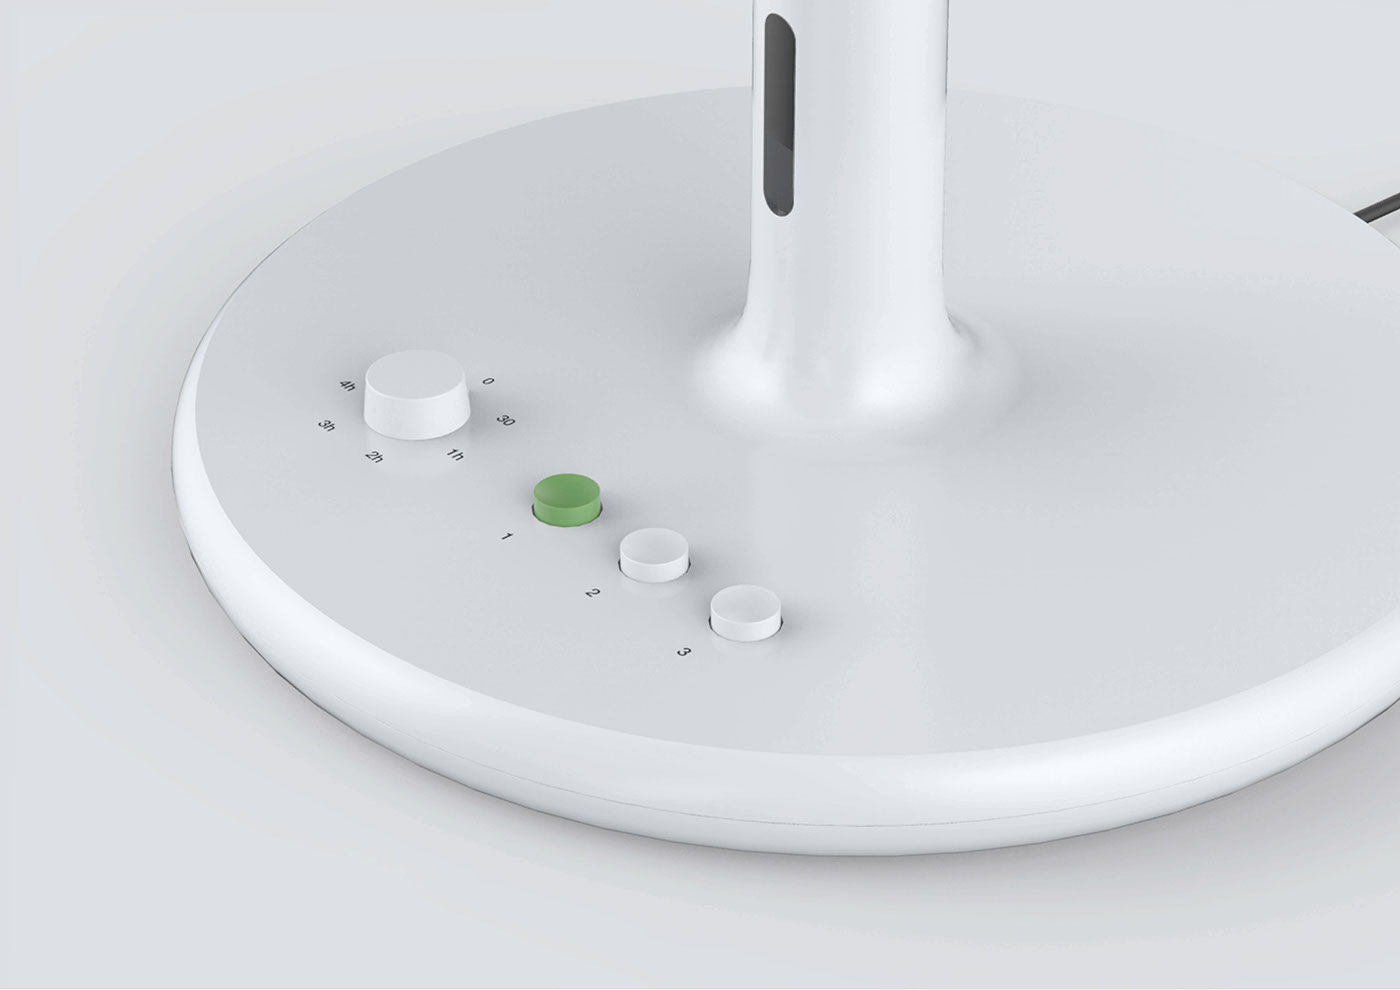 산업디자인 제품디자인 productdesign industrialdesign sketch braun Dieter Rams electric fan fan 선풍기